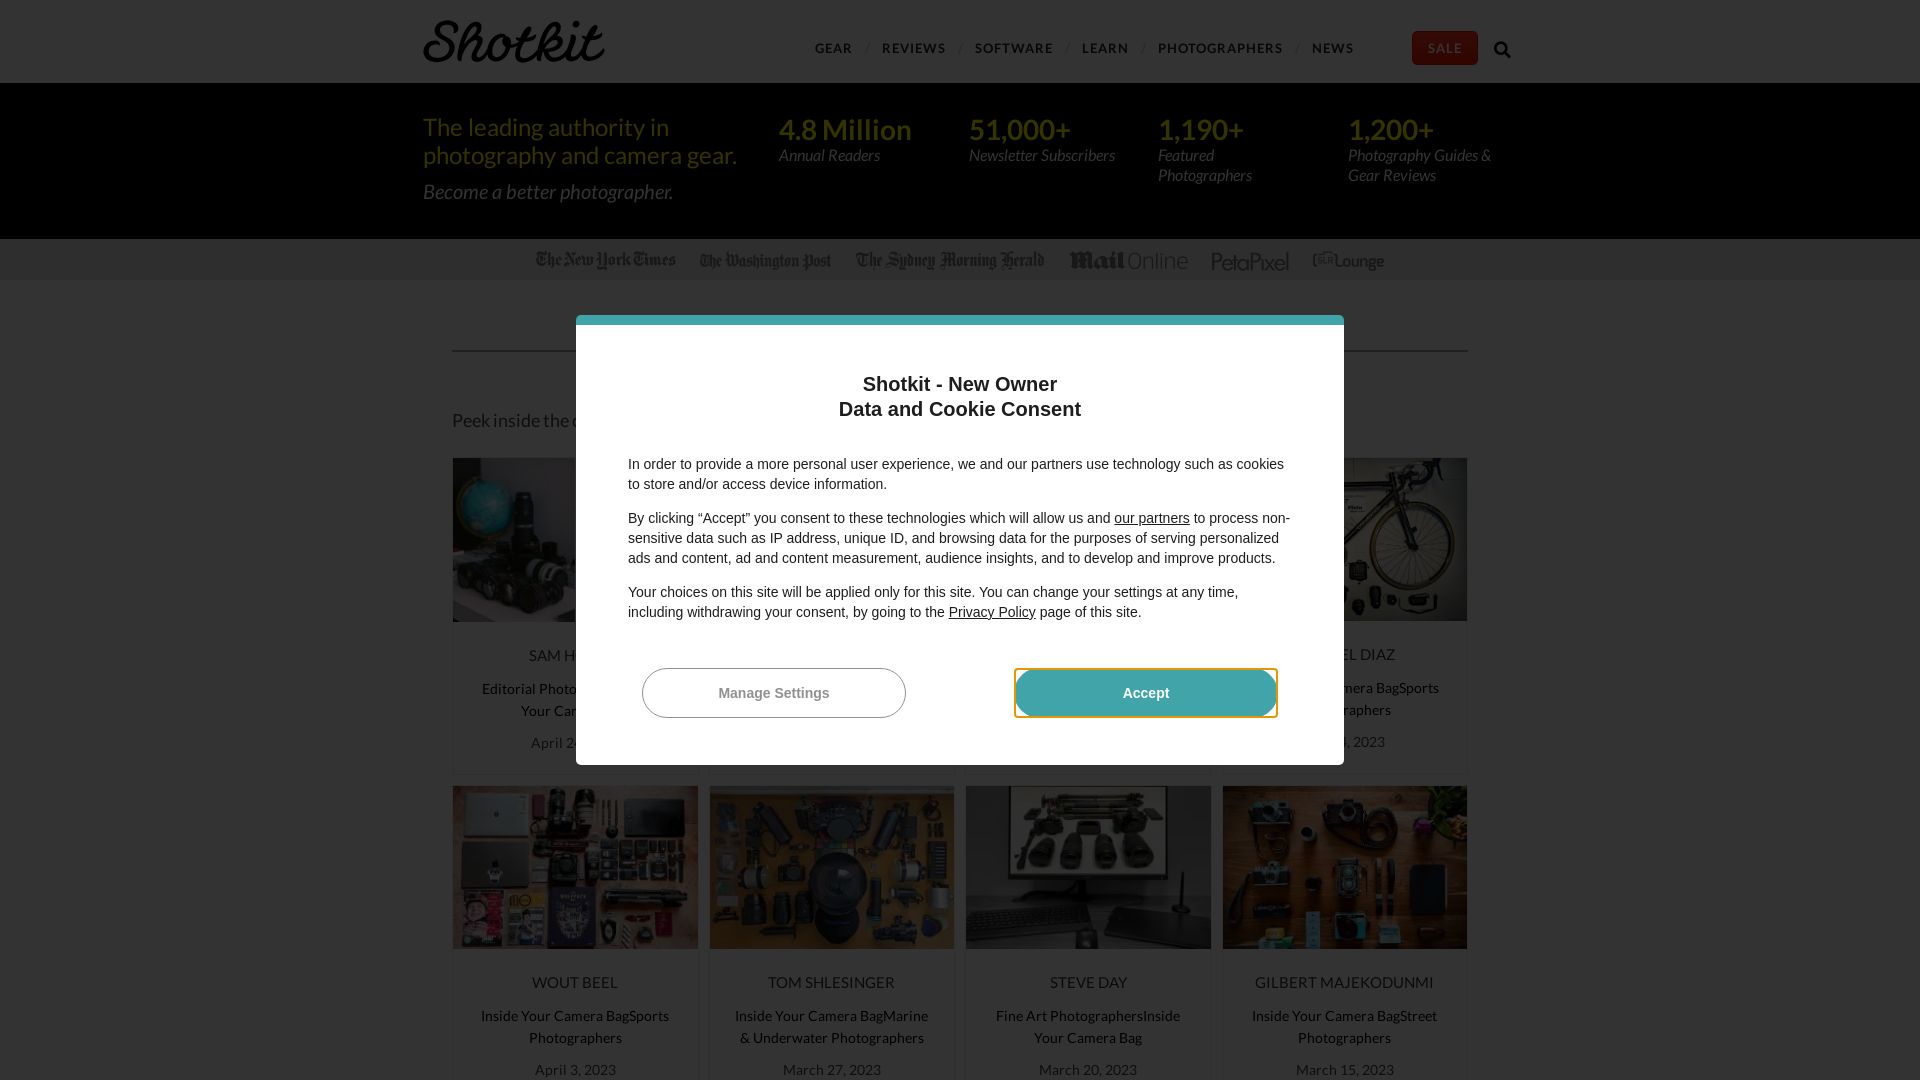 Status do site shotkit.com está   ONLINE